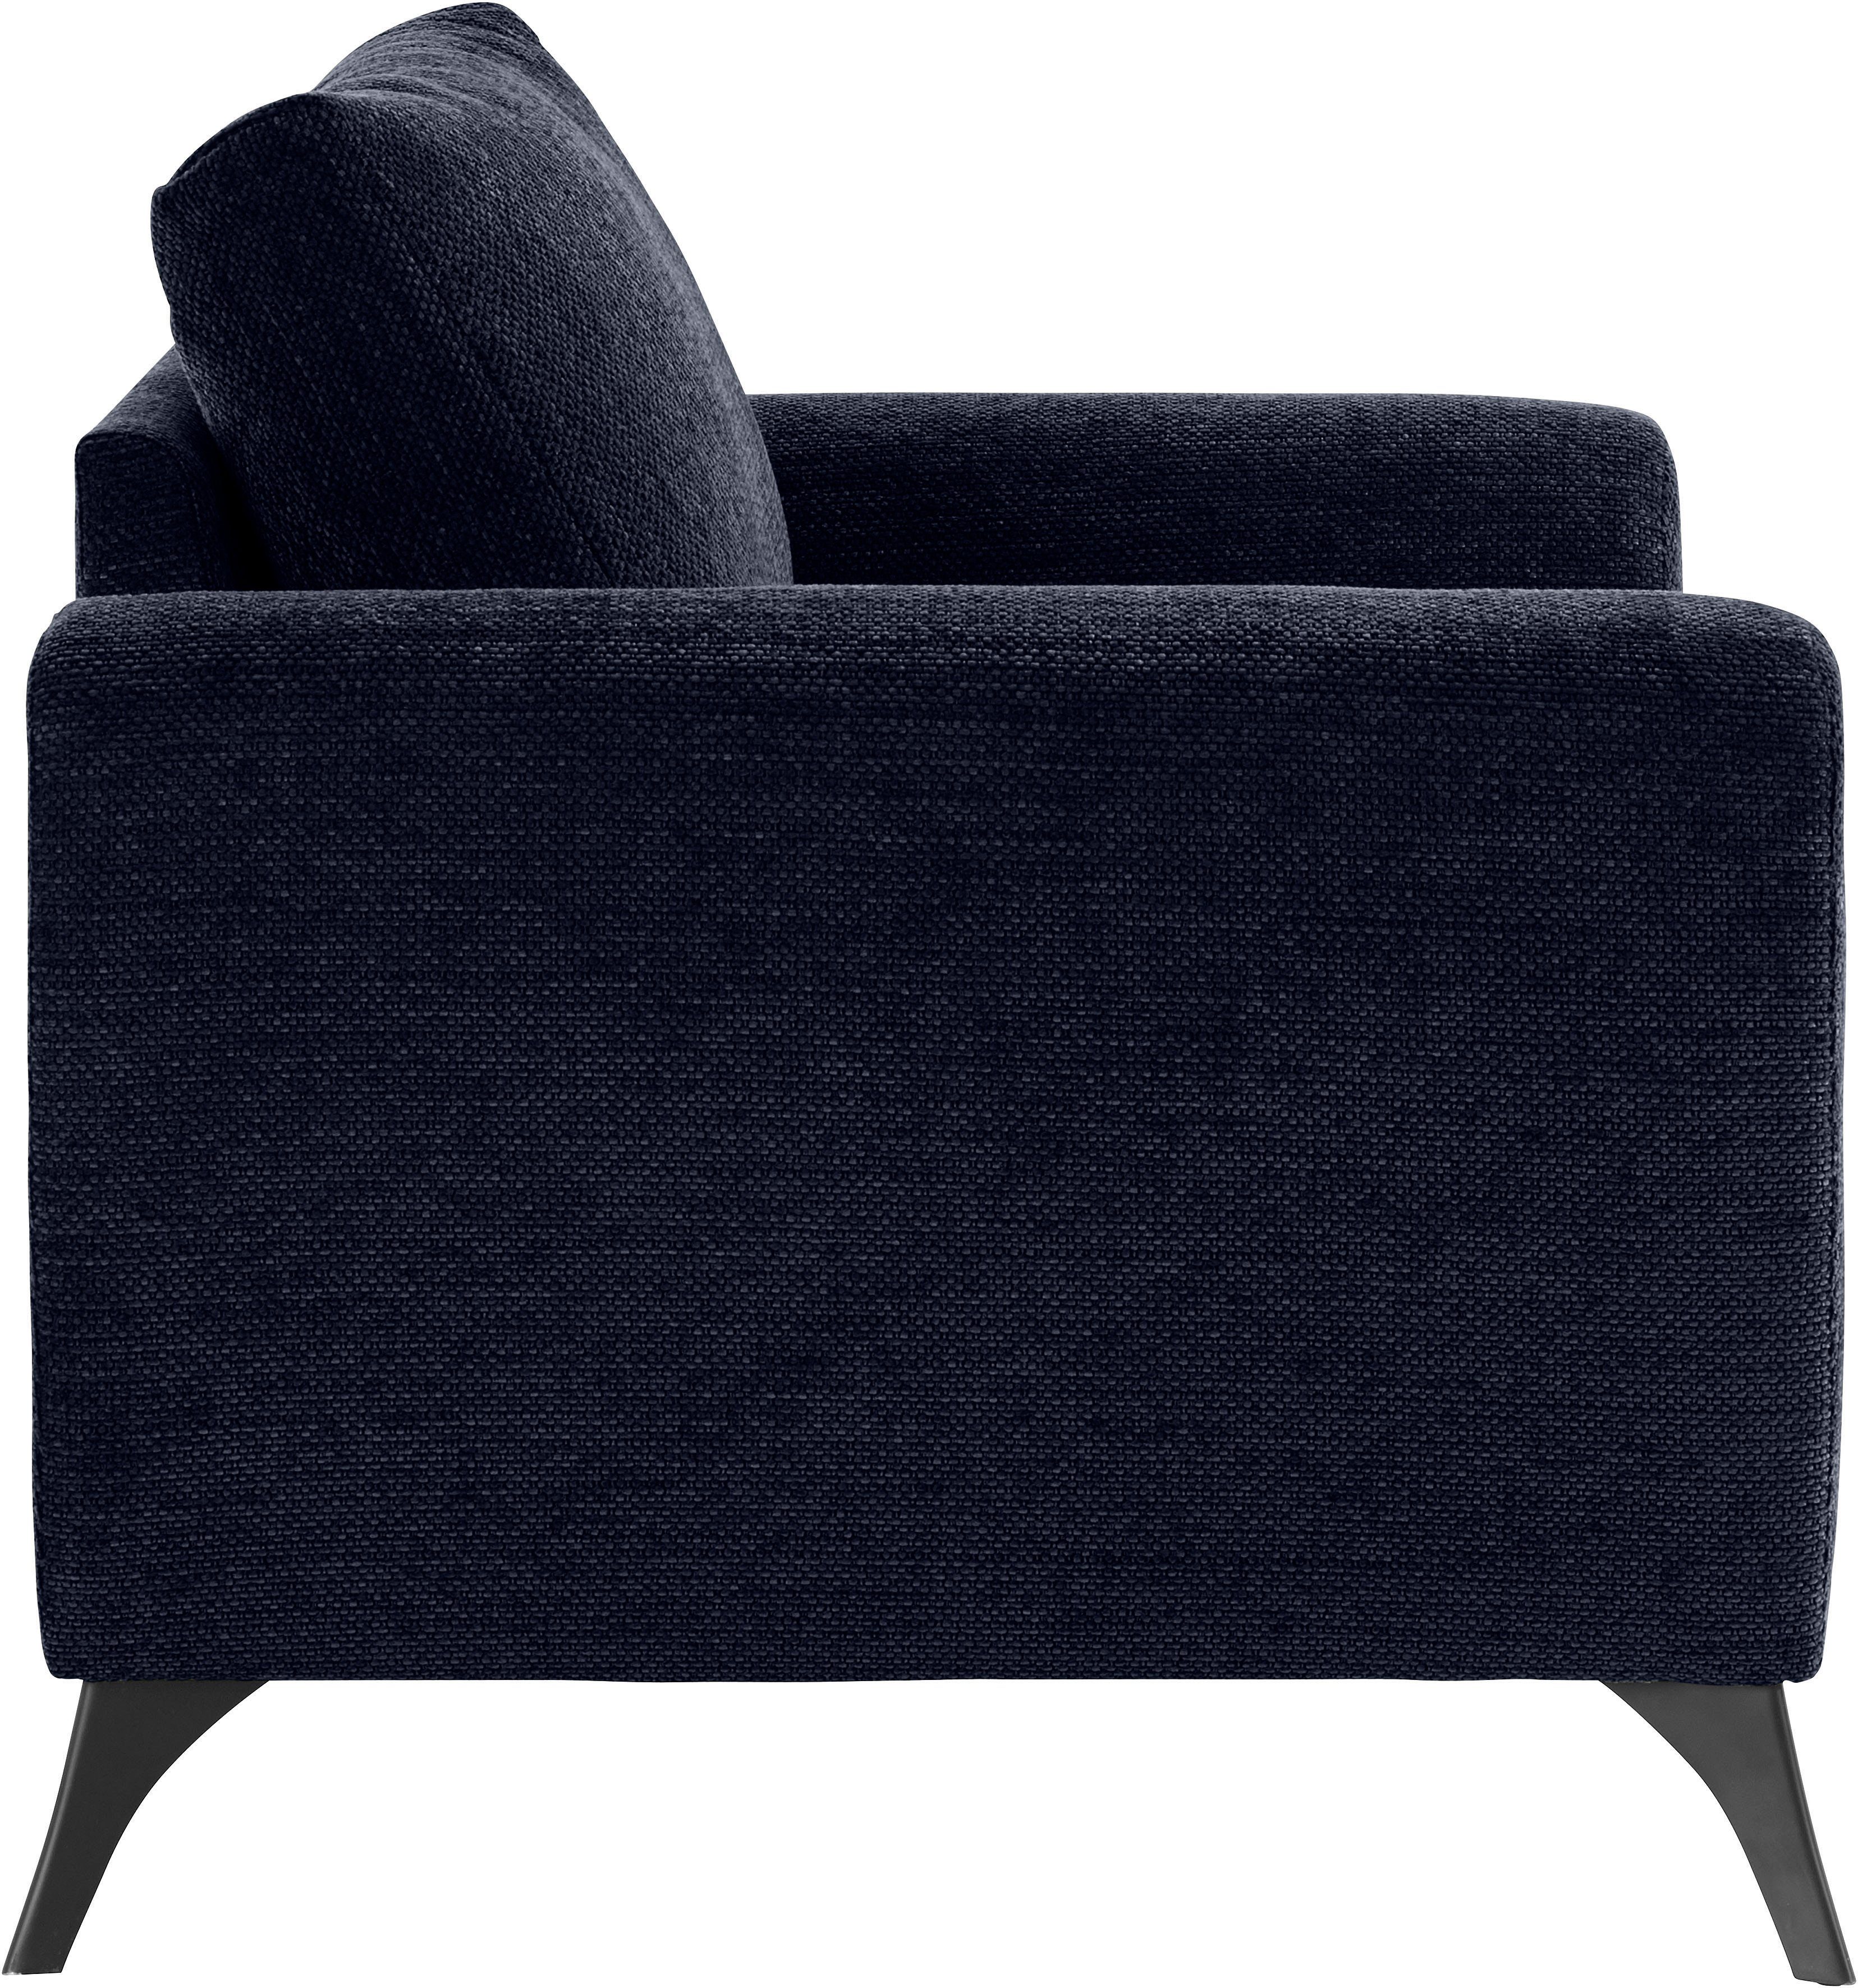 Aqua mit Sitzplatz, bis Belastbarkeit 140kg Lörby, INOSIGN pro clean-Bezug auch Sessel